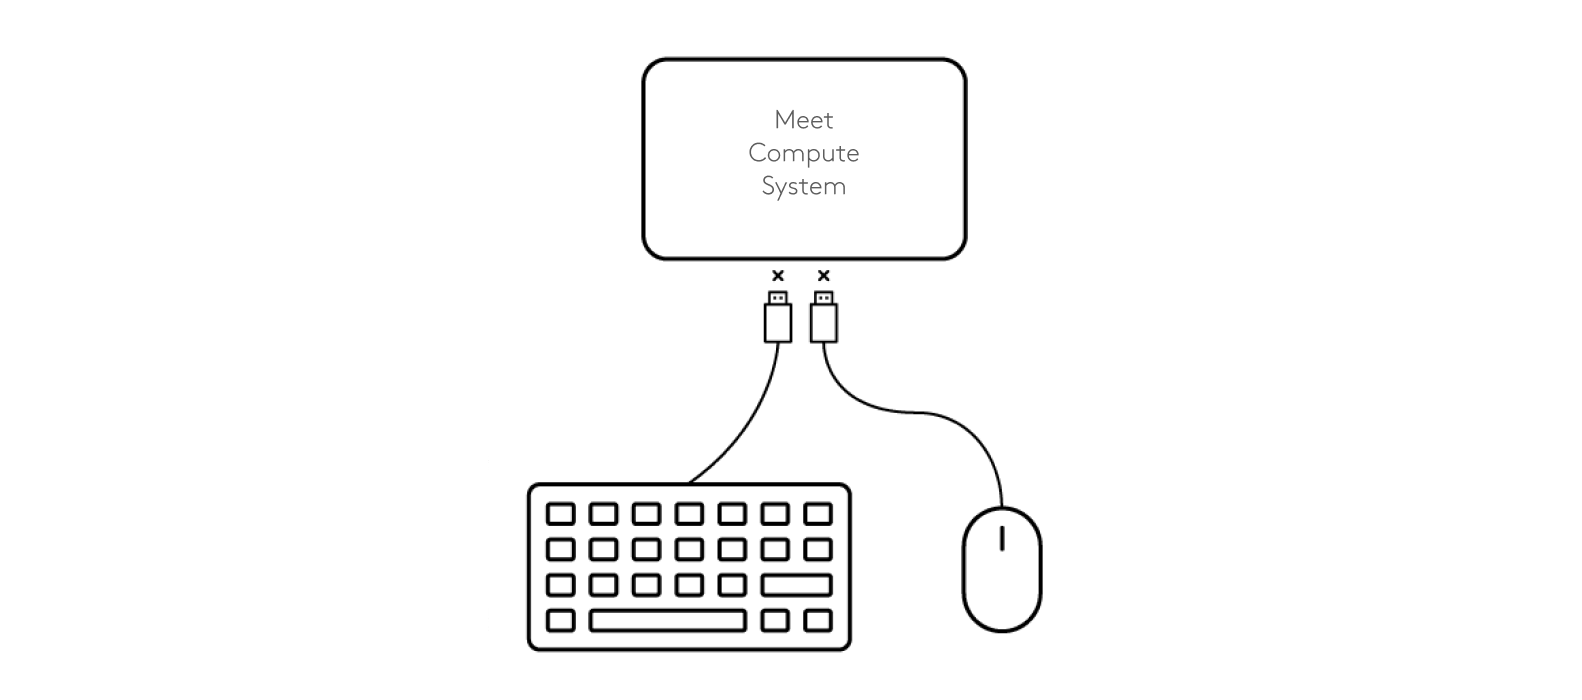 Diagramm: Trennen von Tastatur und Maus vom Meet-Computing-System